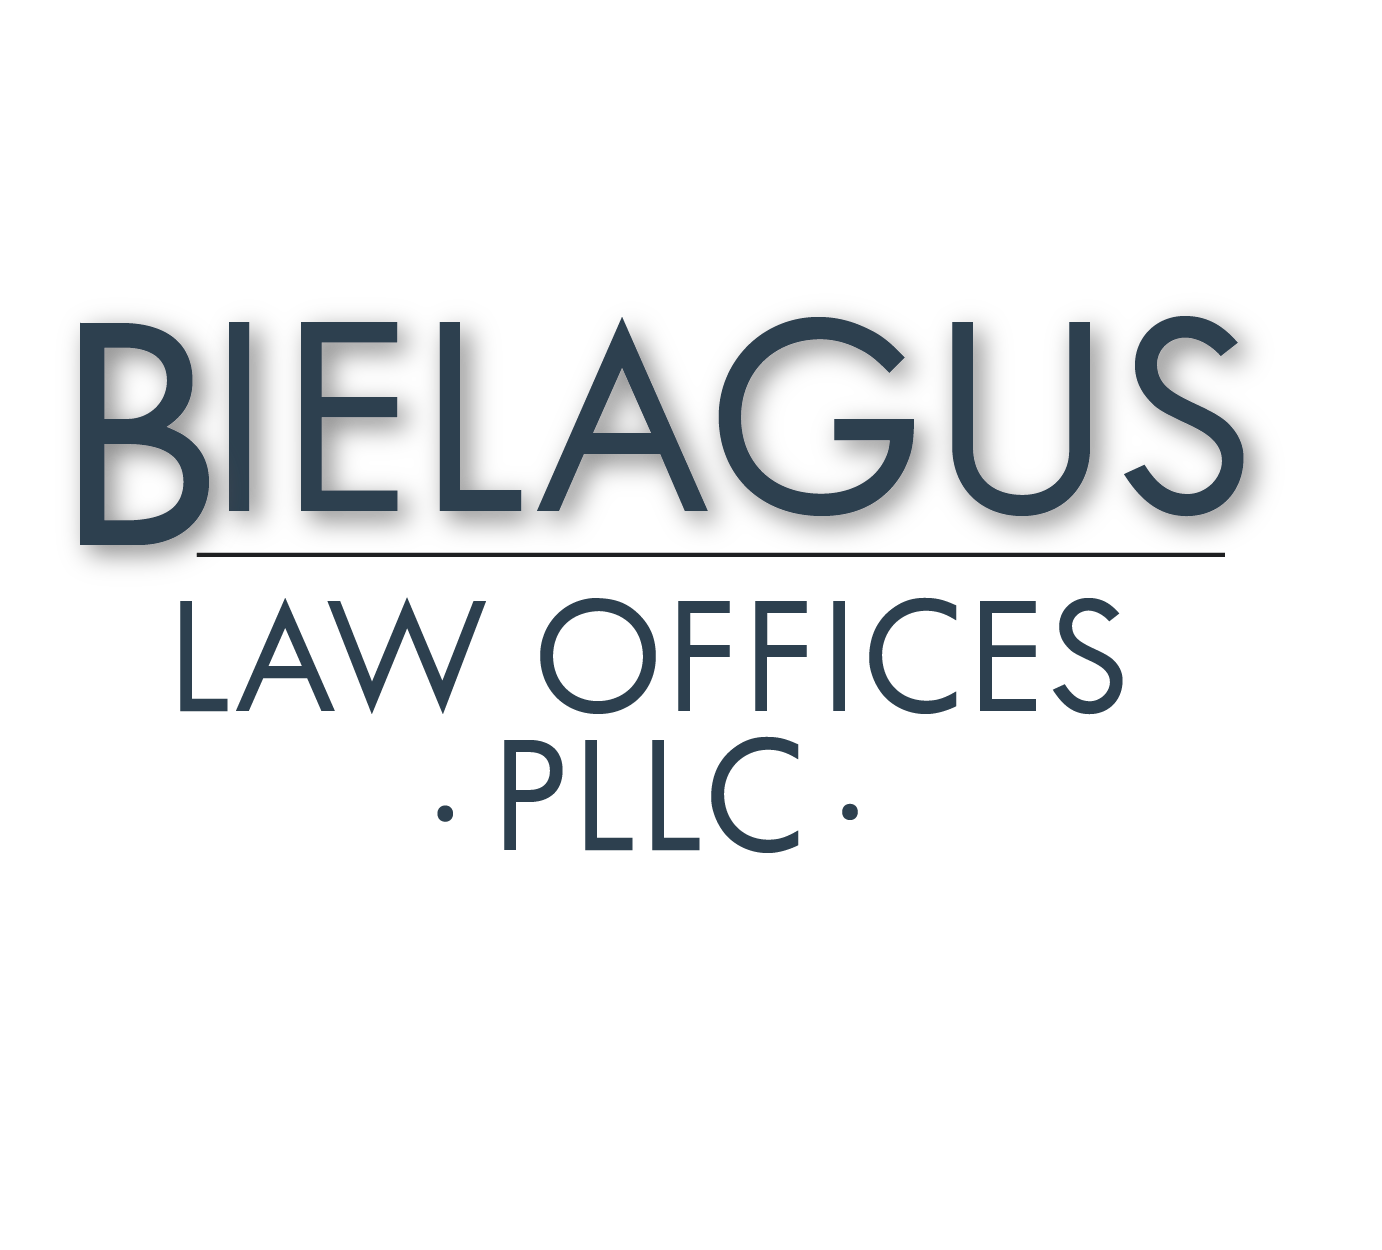 Bielagus Law